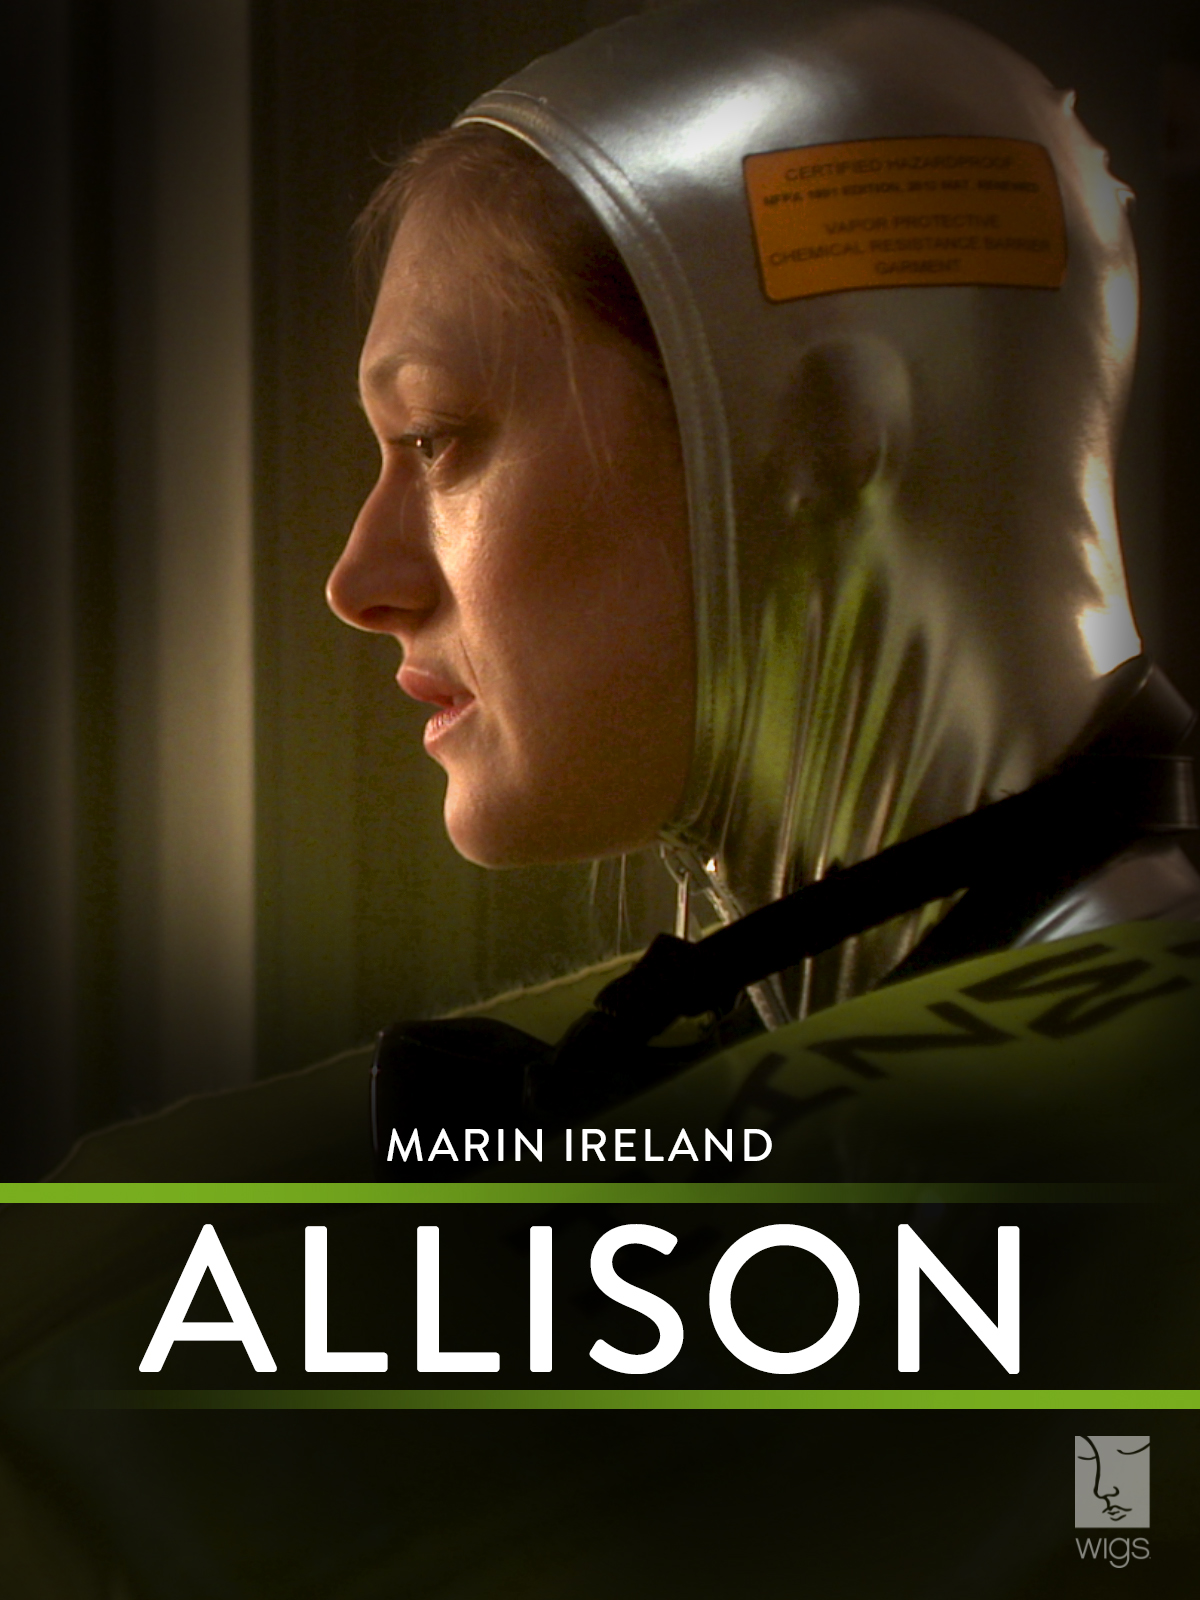 Marin Ireland in Allison (2012)